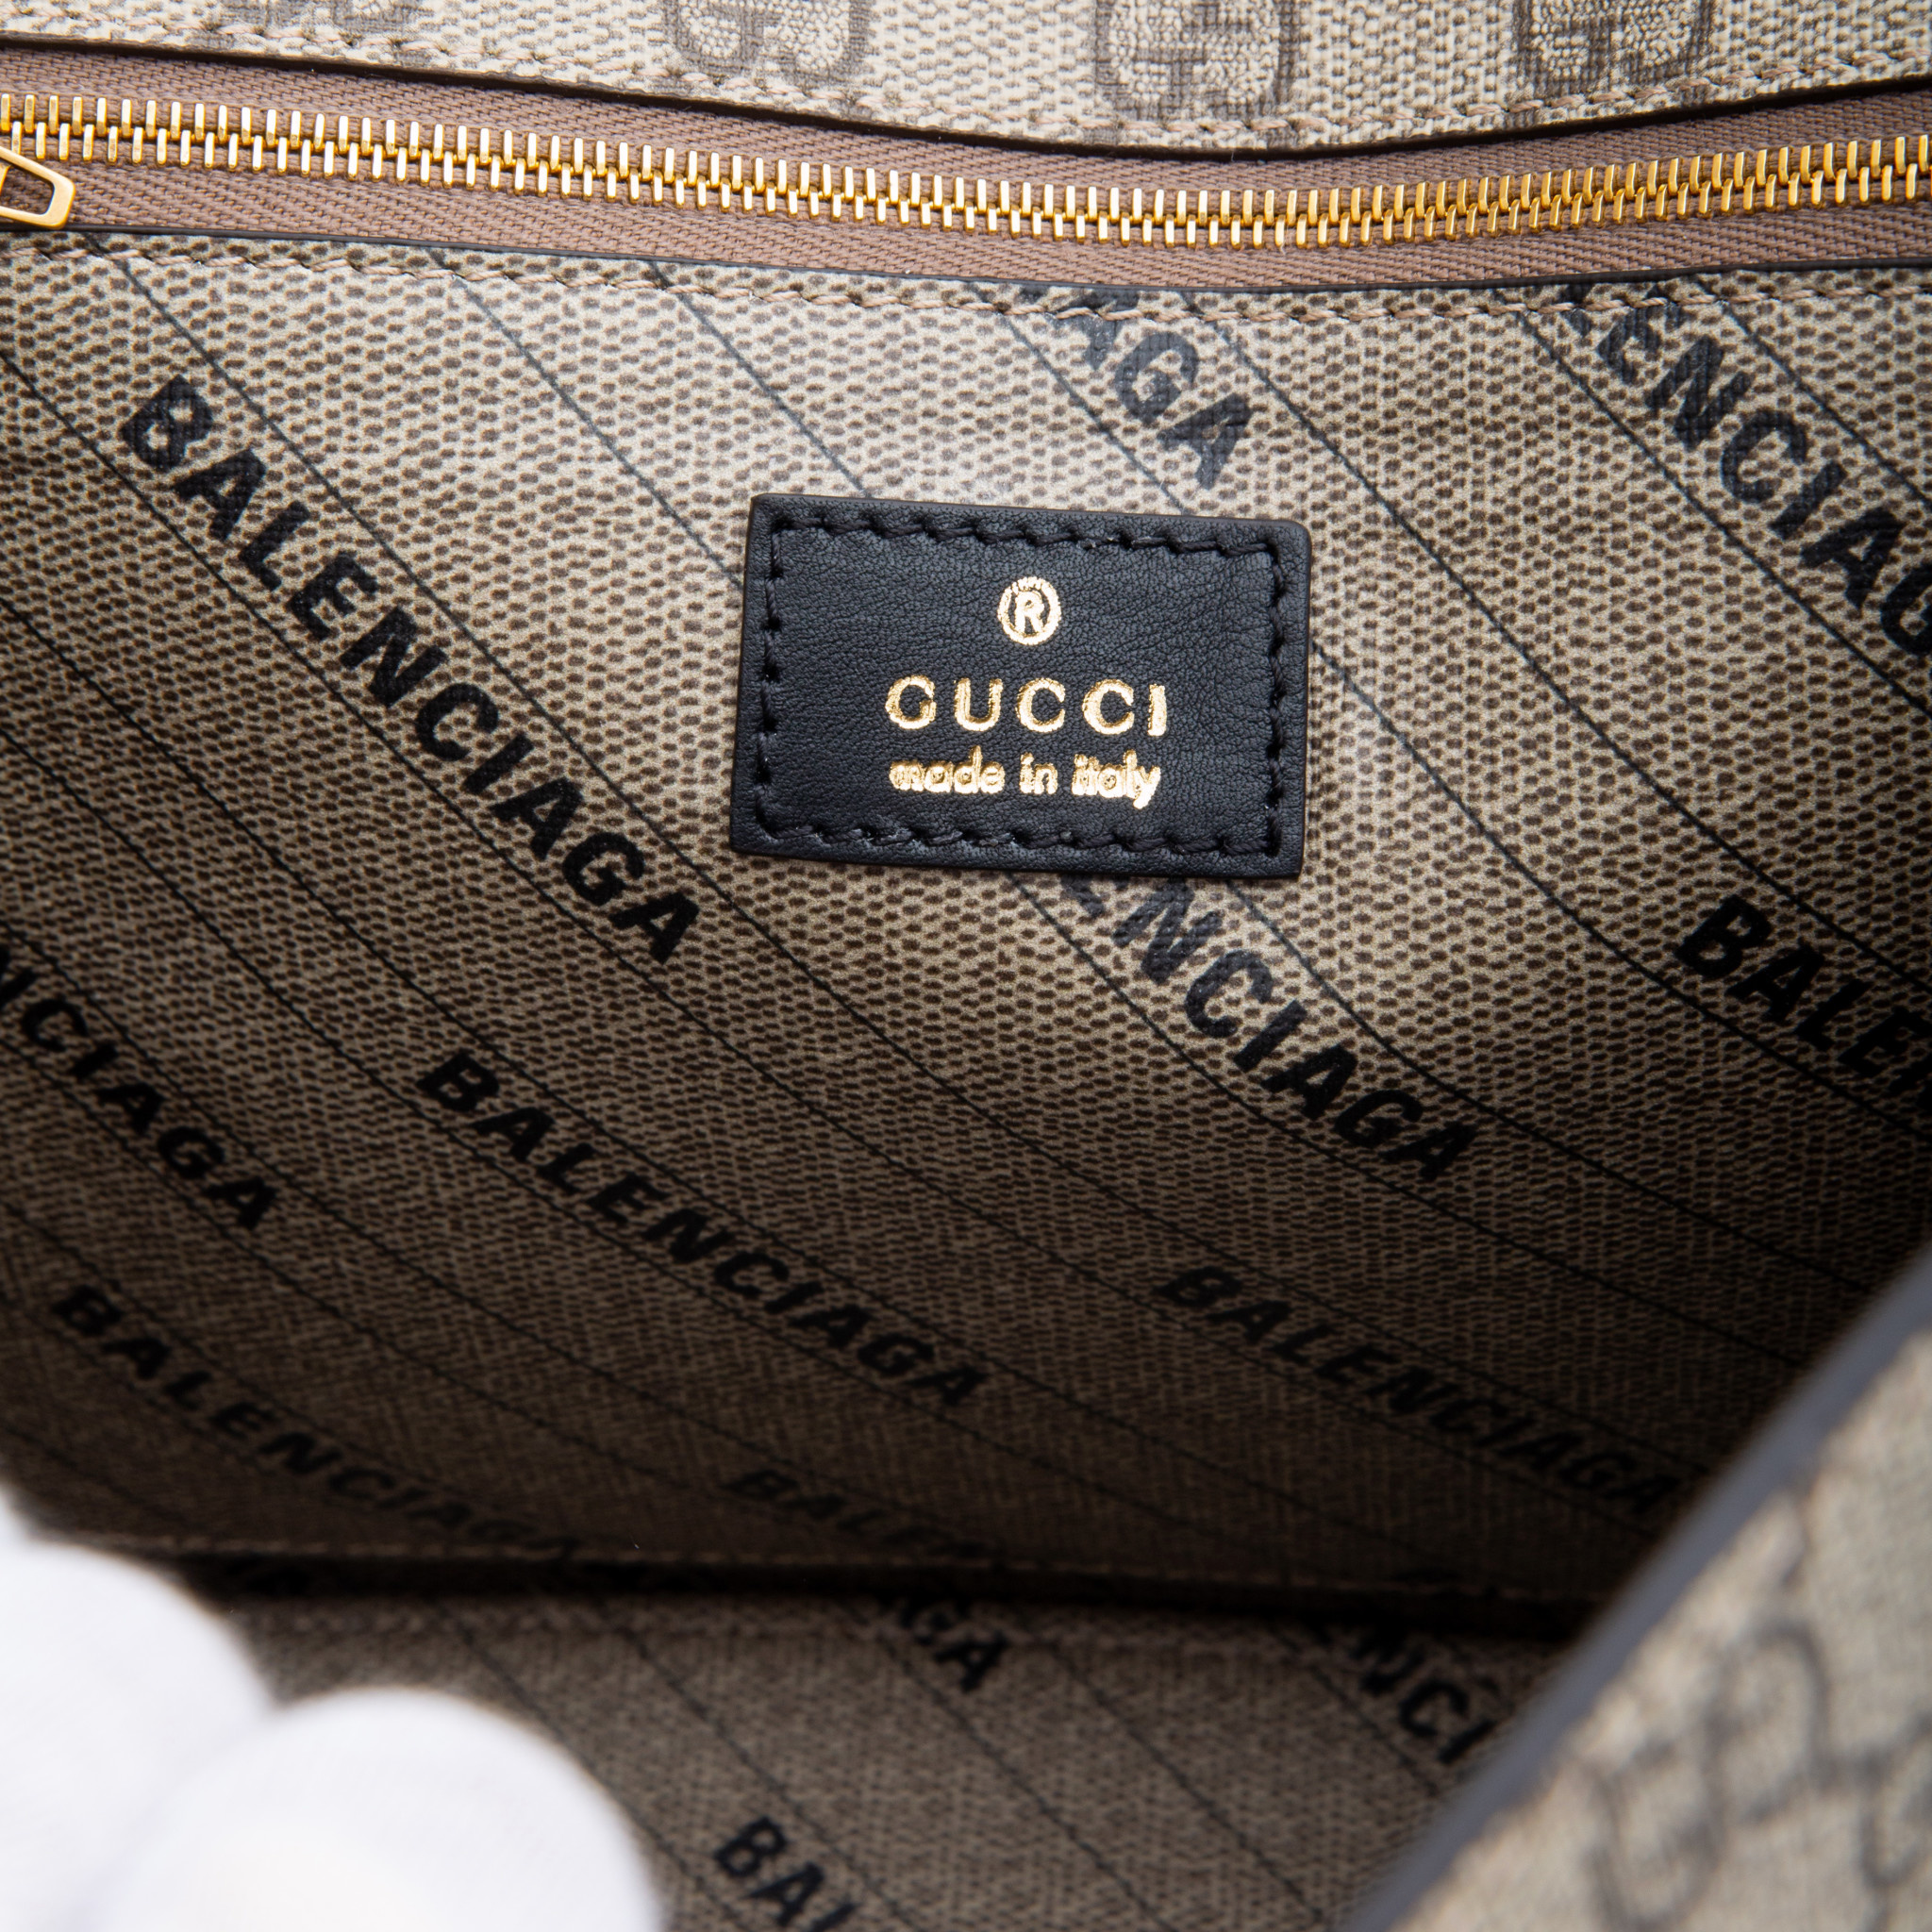 Balenciaga x Gucci Clothing, Accessories, Bags